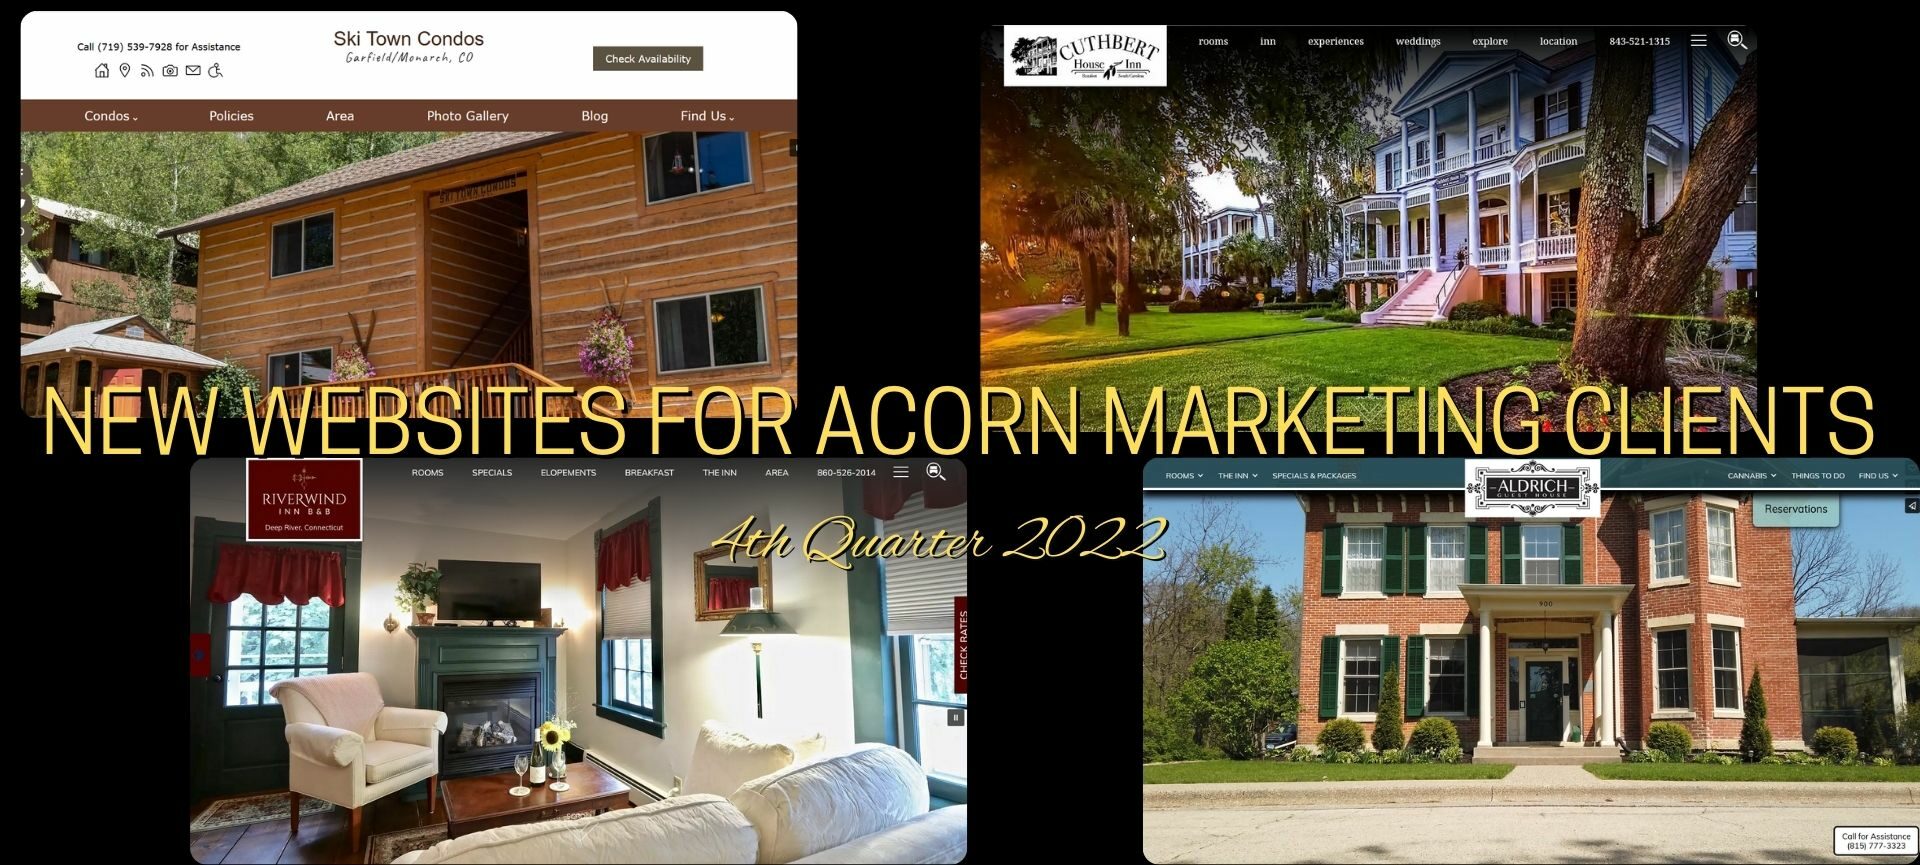 Acorn New 4th Quarter website designs collage